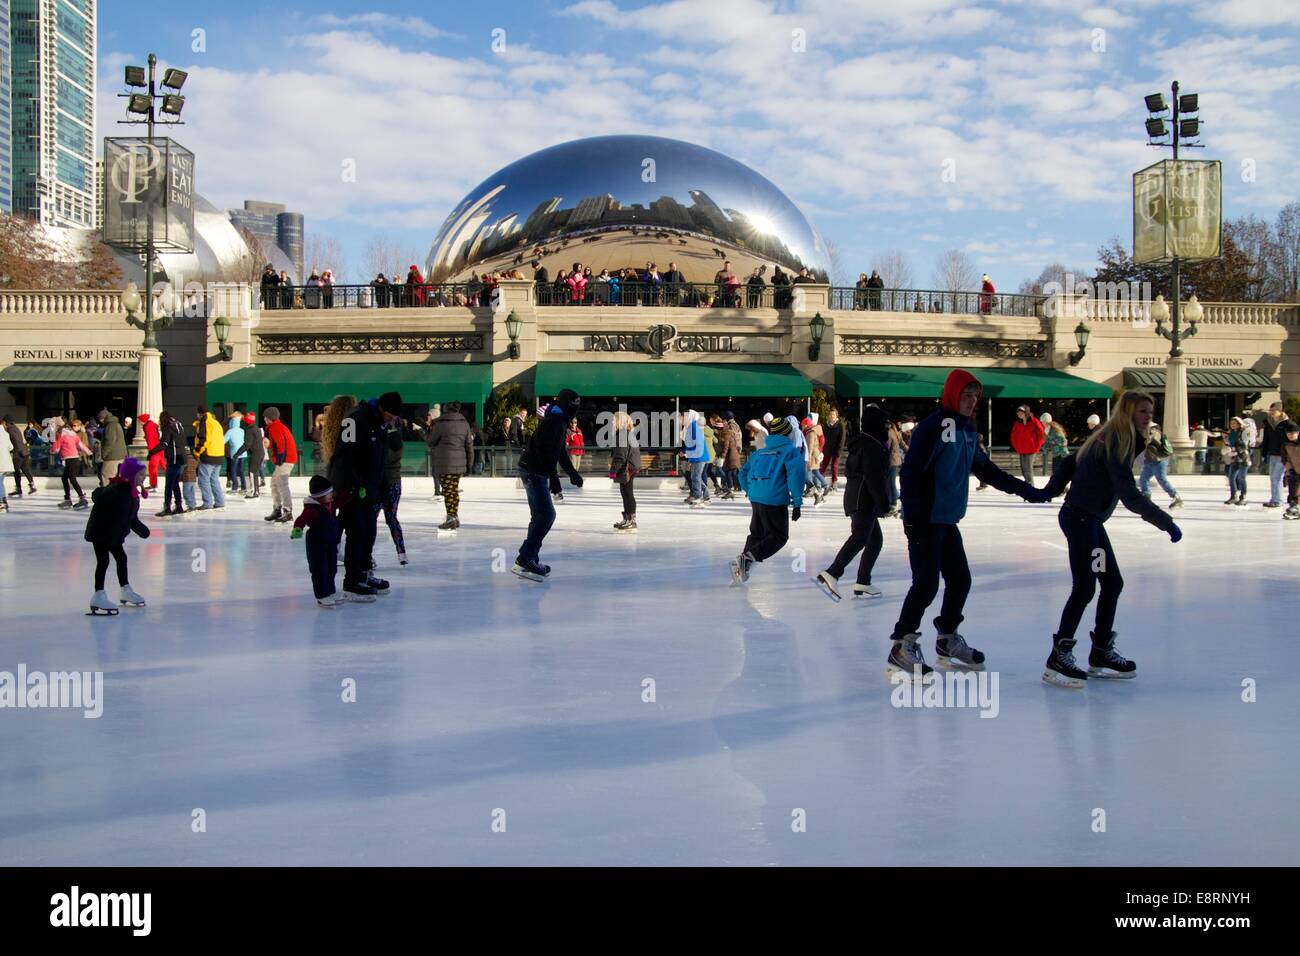 Pattinaggio sul ghiaccio pattino il McCormick Tribune pista di pattinaggio su ghiaccio, Cloud Gate scultura in background. Il Millennium Park di Chicago, Illinois. Foto Stock